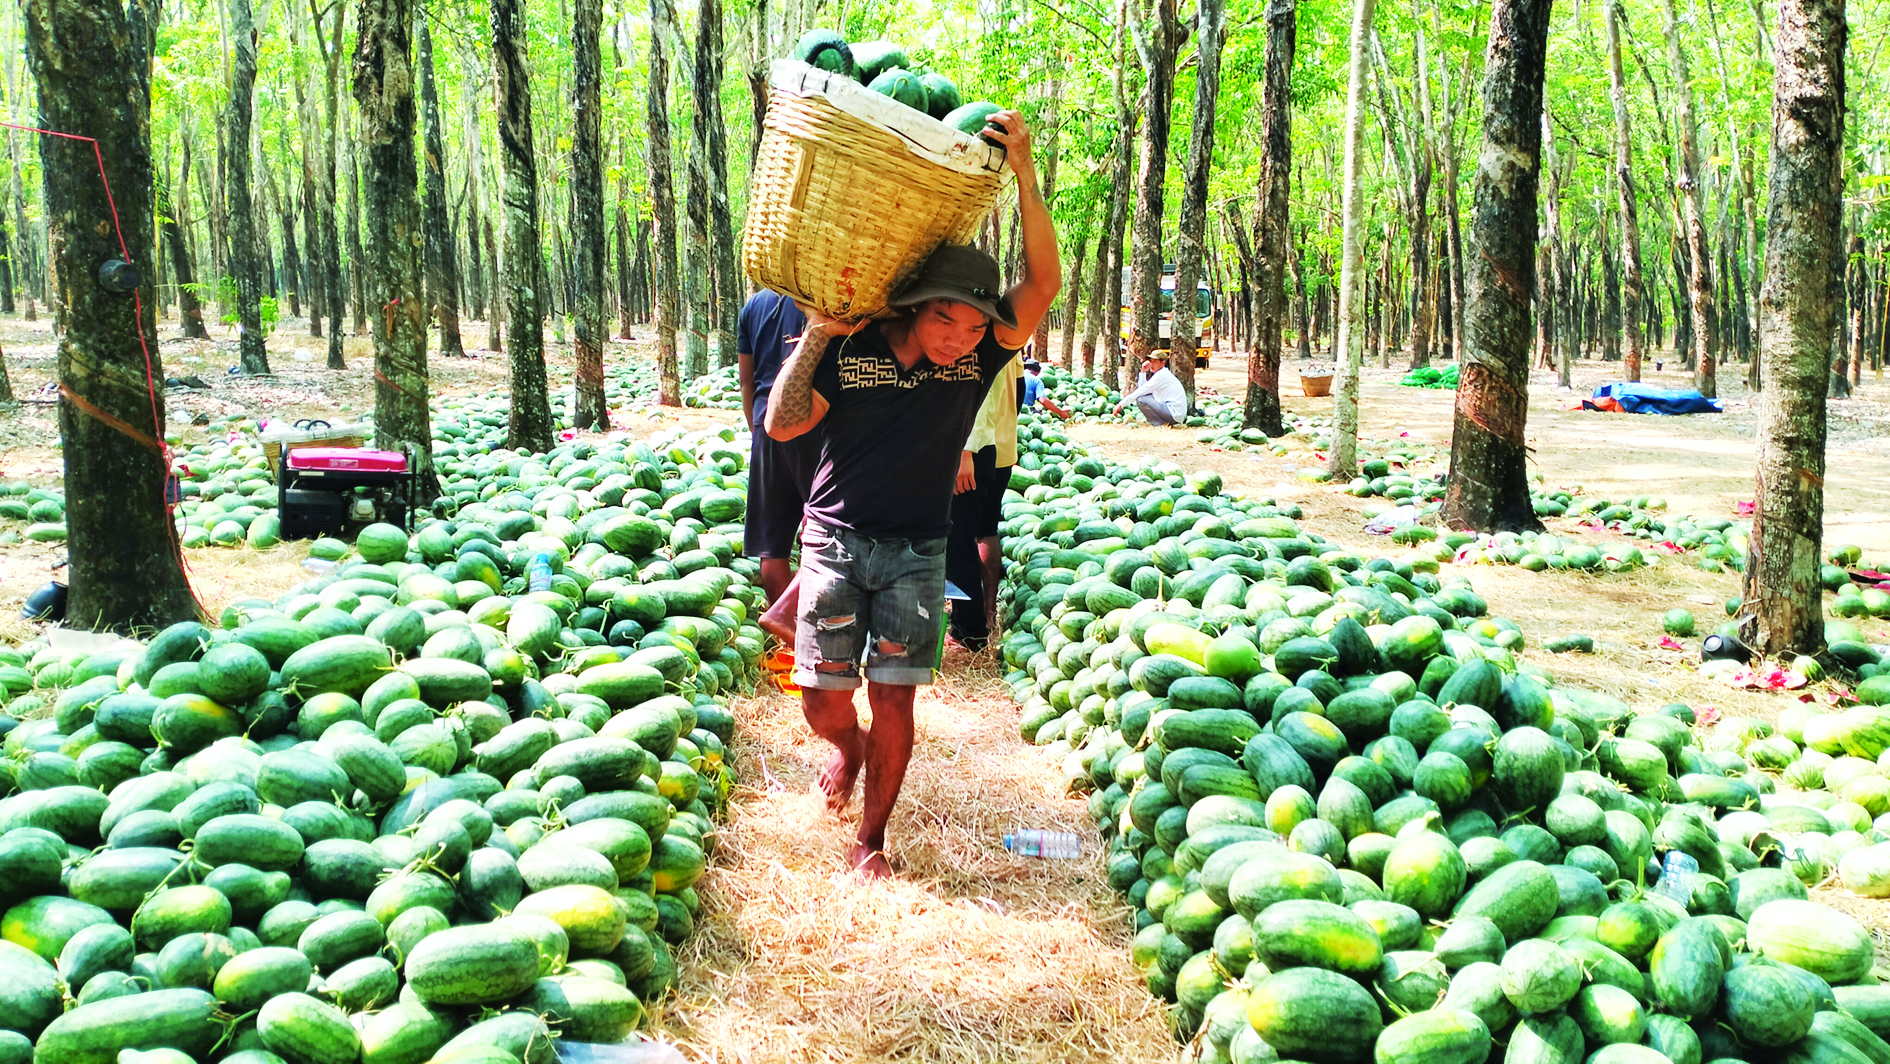 Trong khu rừng ở Tây Ninh, cắt trái ngon bày la liệt hàng tấn, giá bán rẻ mạt, lịm dần, có loại bán 1.000 đồng/kg- Ảnh 1.